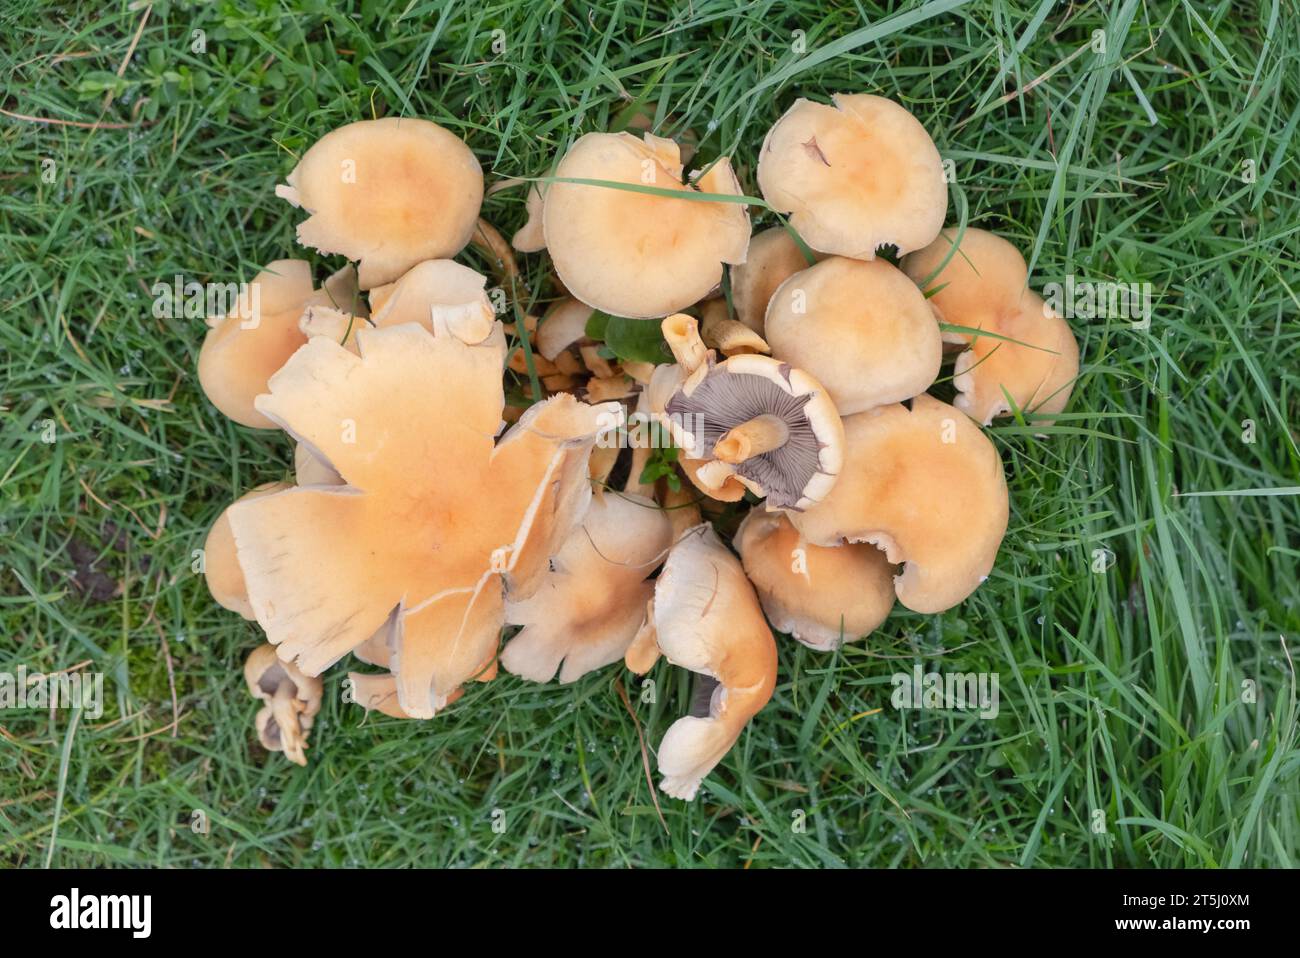 Une touffe de champignons sauvages jaunes poussant dans une touffe sur l'herbe humide, automne en Écosse. Les branchies sont de couleur gris pâle/buff. Banque D'Images